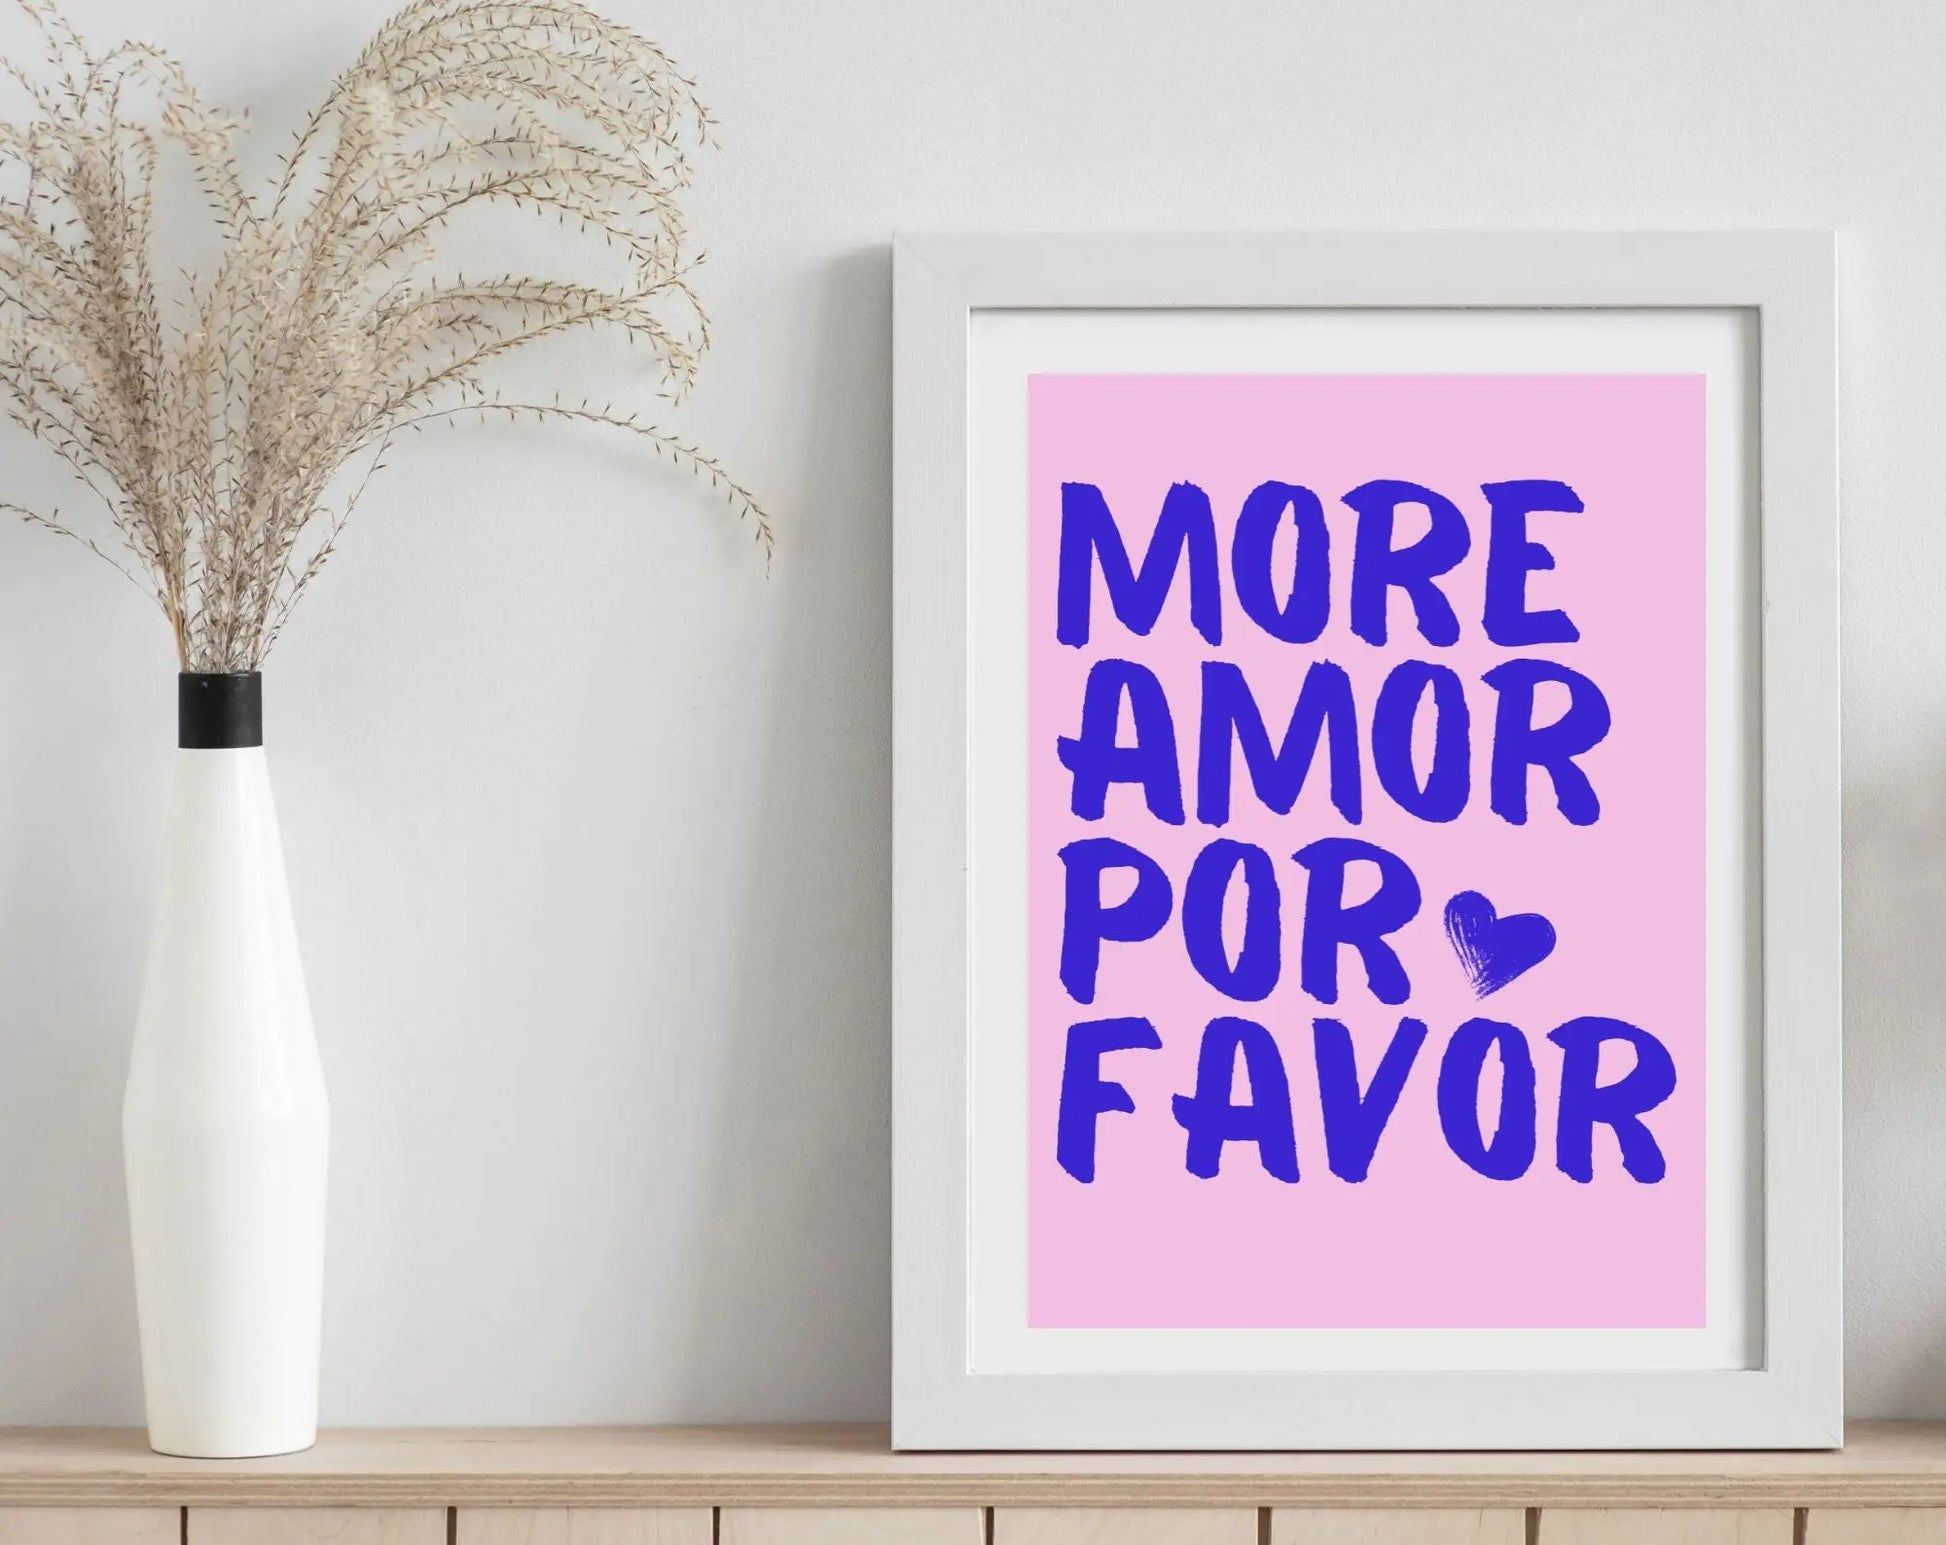 Affiche More Amor Por Favor mauve - Affiche de citation d'amour FLTMfrance